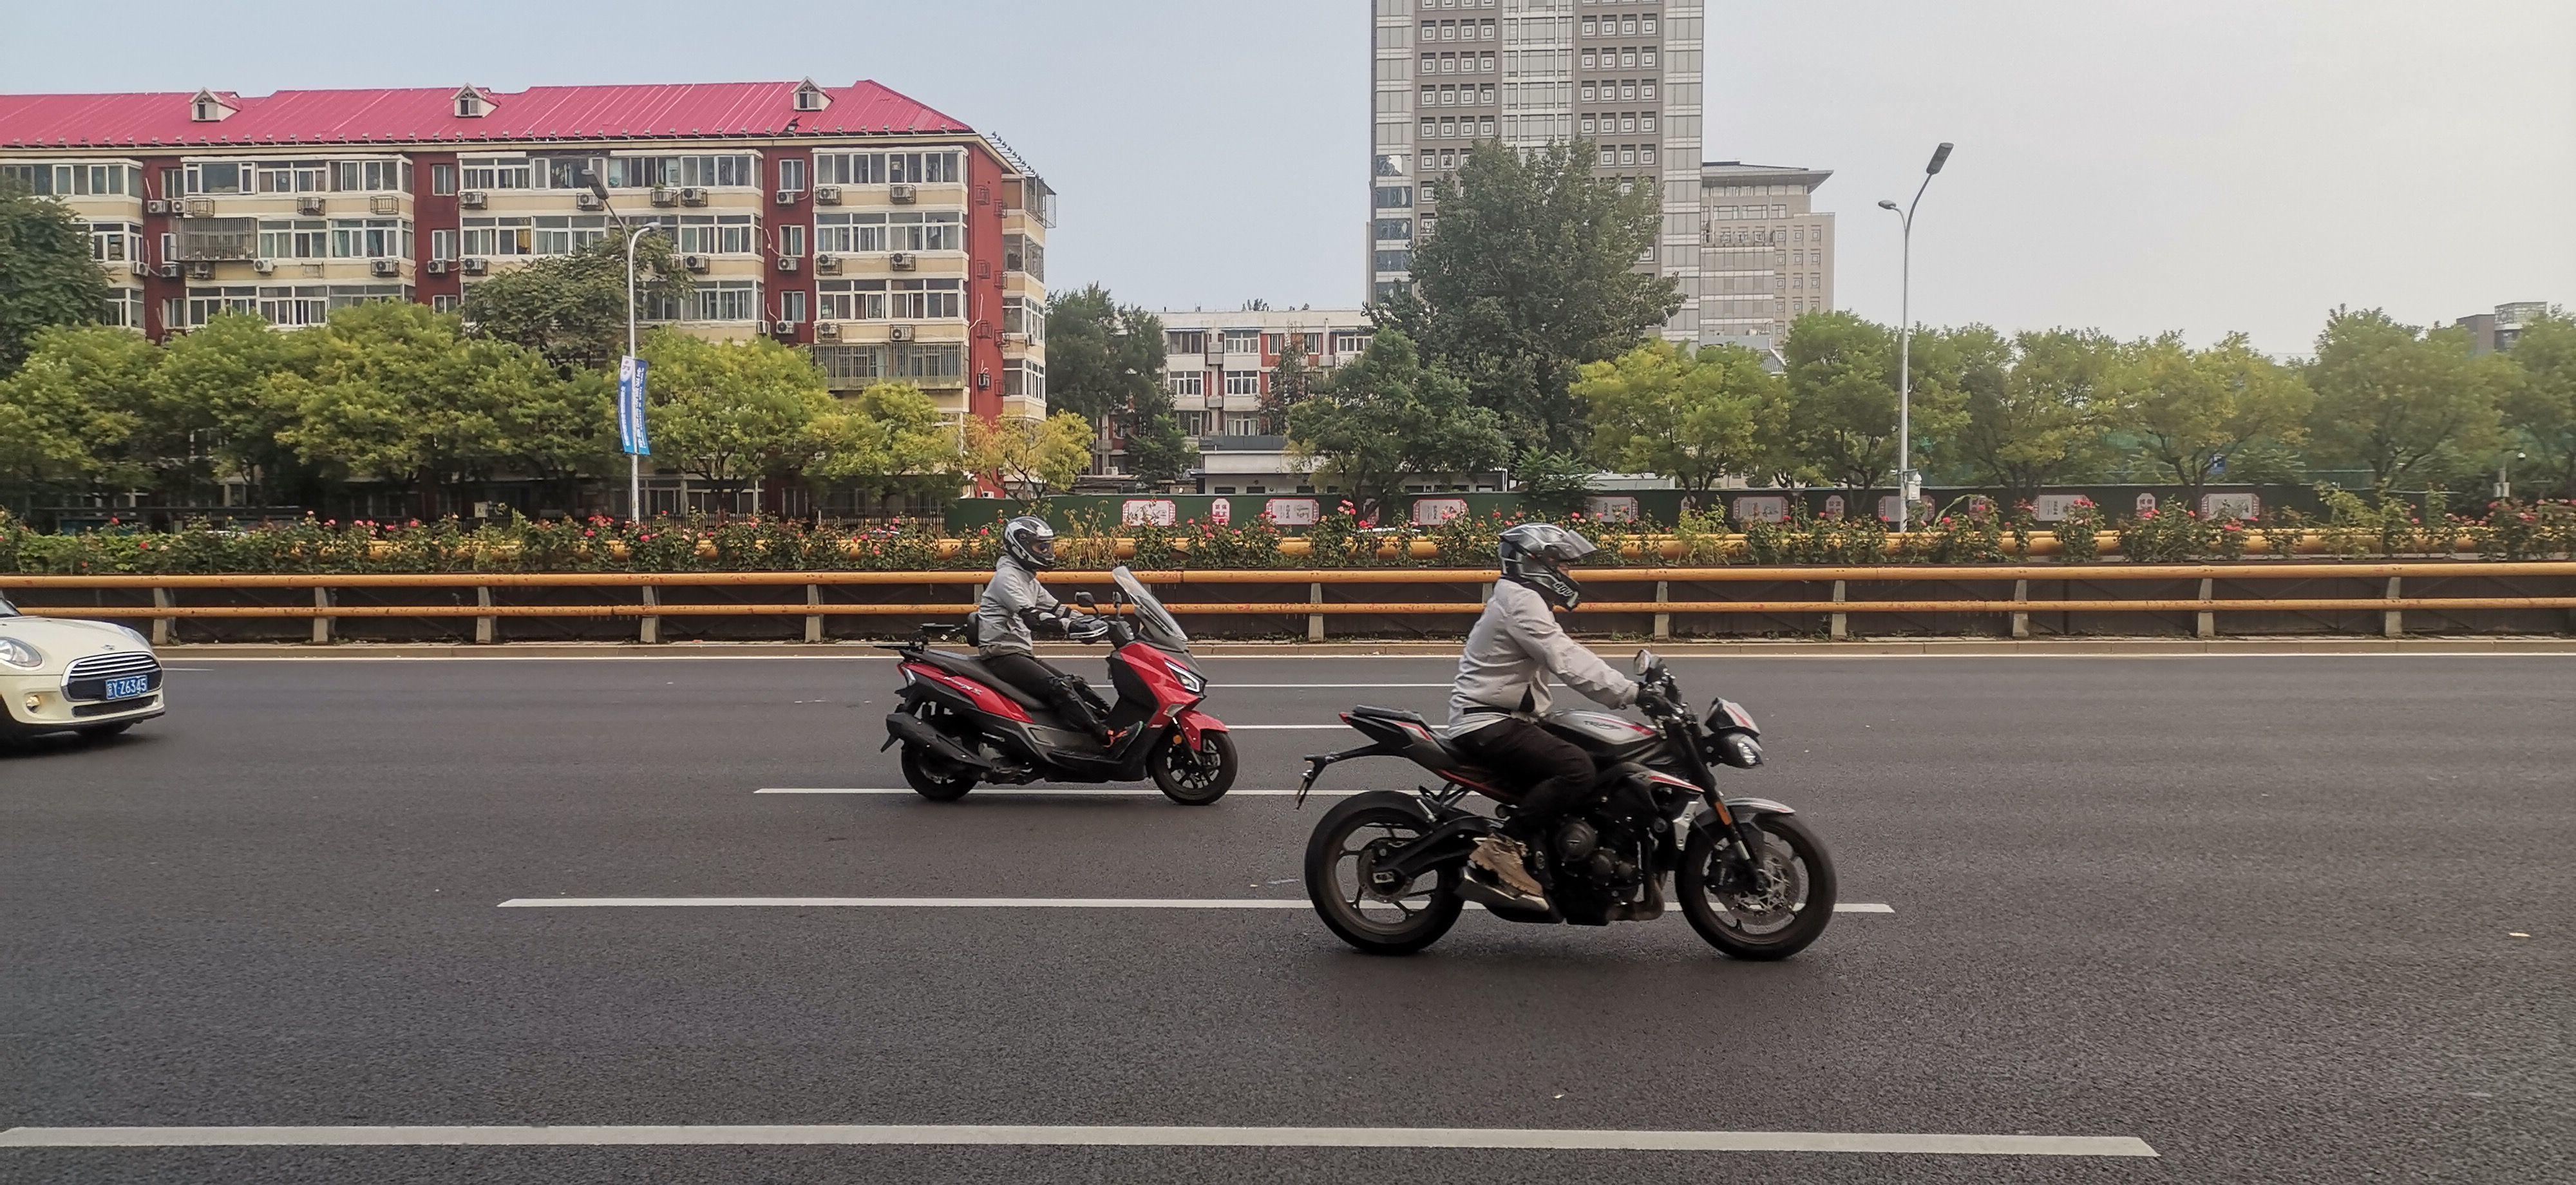 各位北京大佬,这两天去北京出差,看到北四环上有很多京b摩托通过,保有